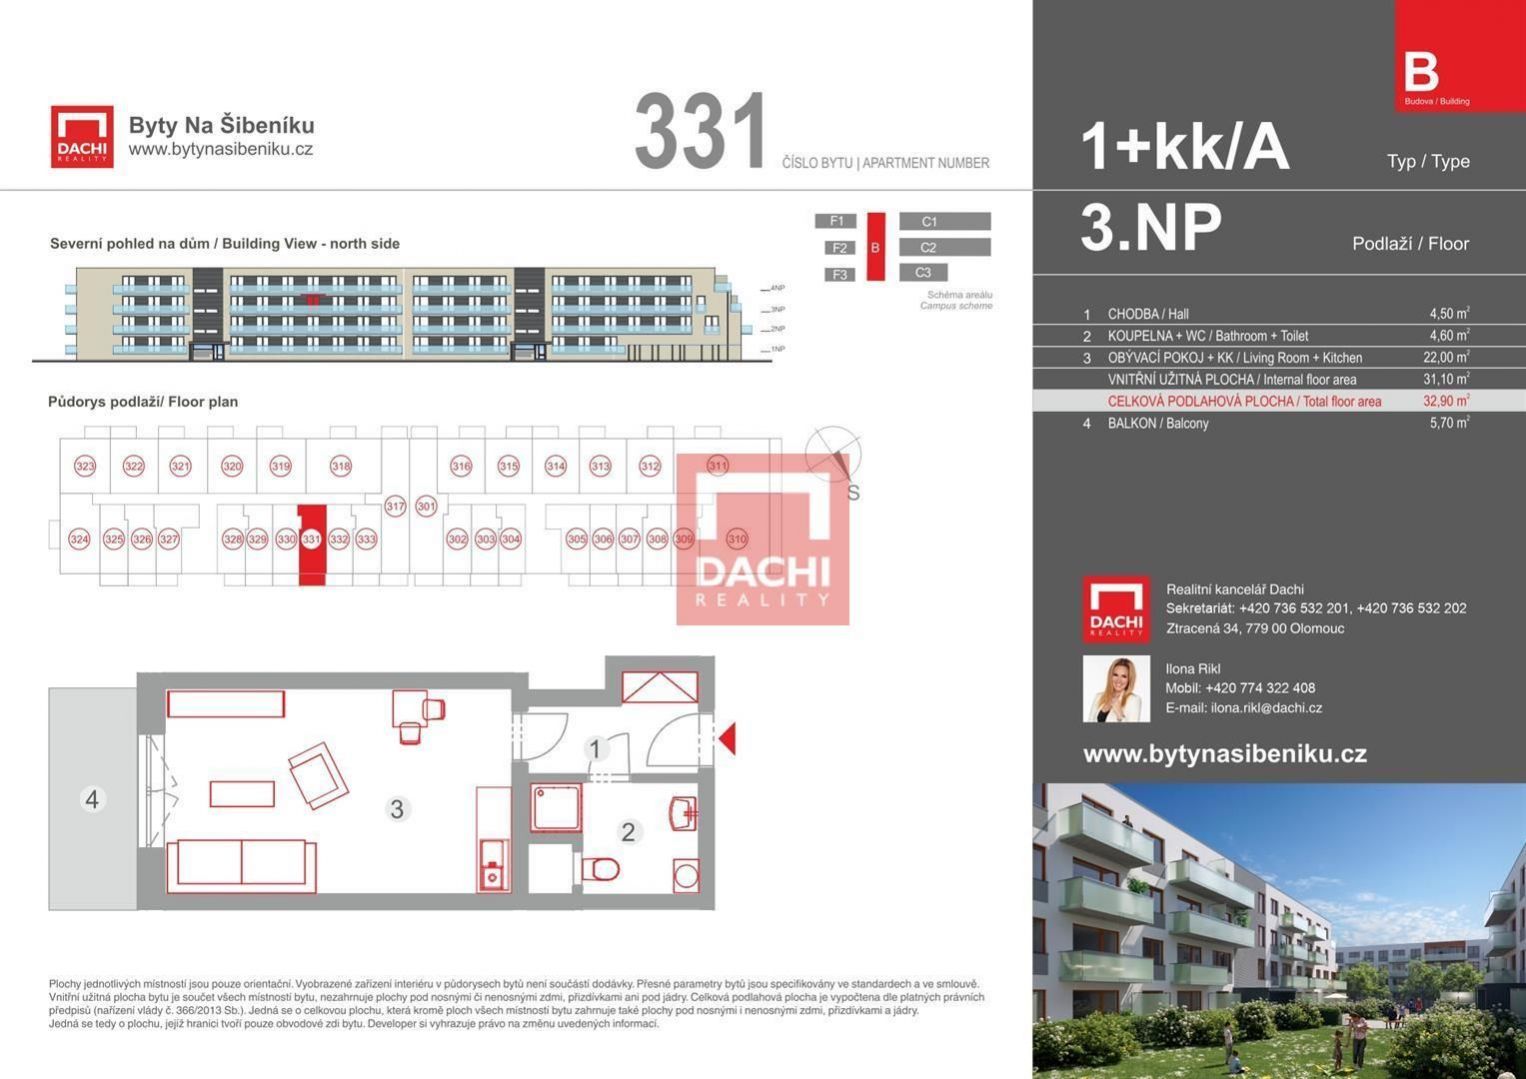 Prodej novostavby bytu B.331  1+kk 32,90m s balkonem 5,70m, Olomouc, Byty Na Šibeníku II.etapa, obrázek č. 3